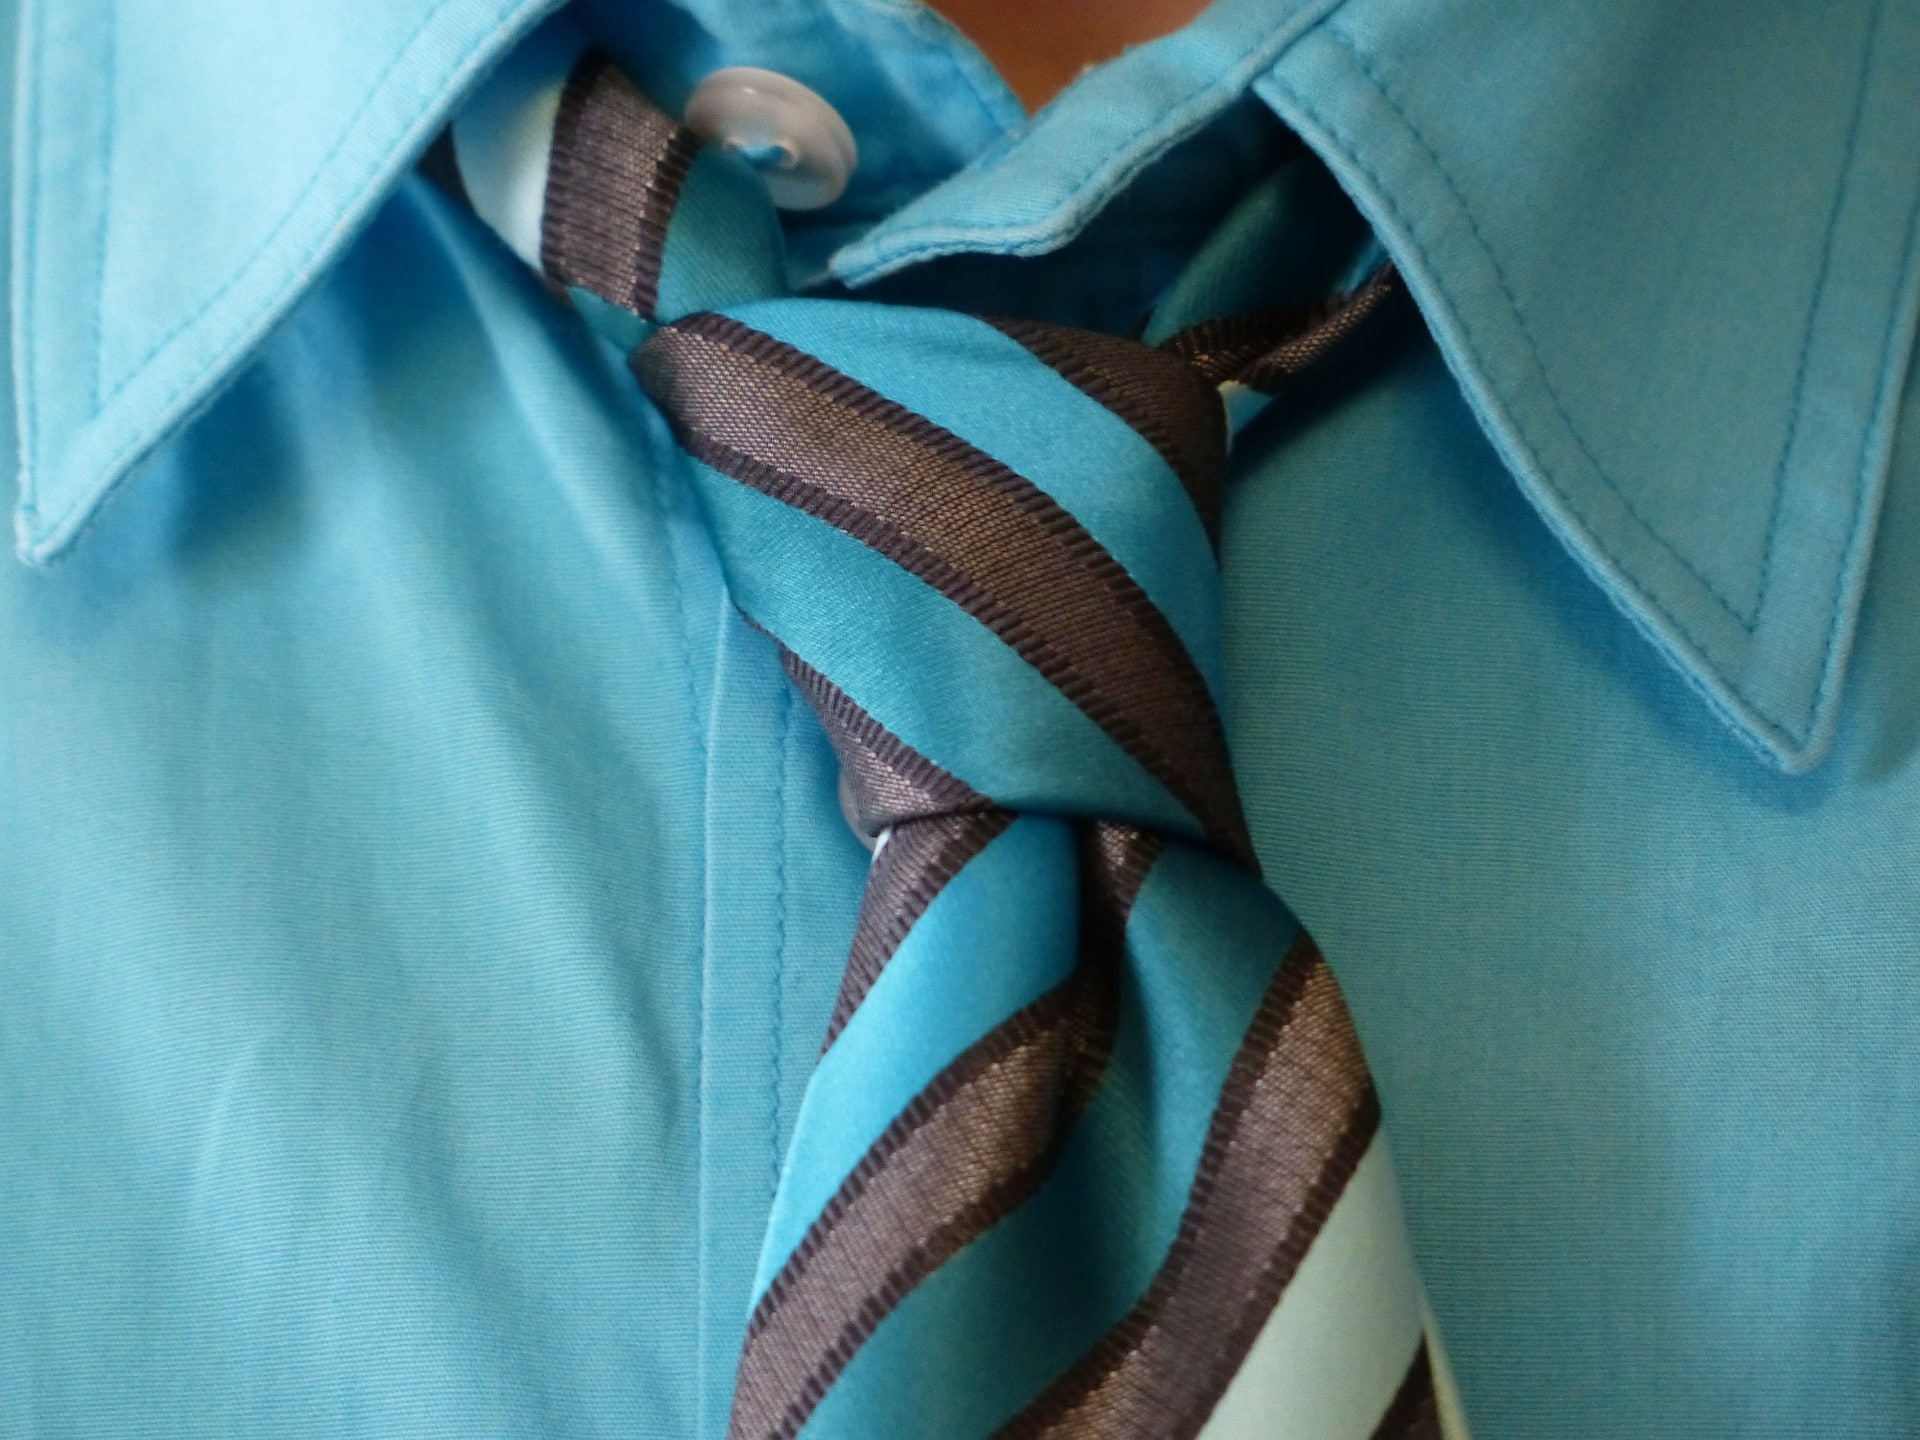 Les différents nœuds de cravate